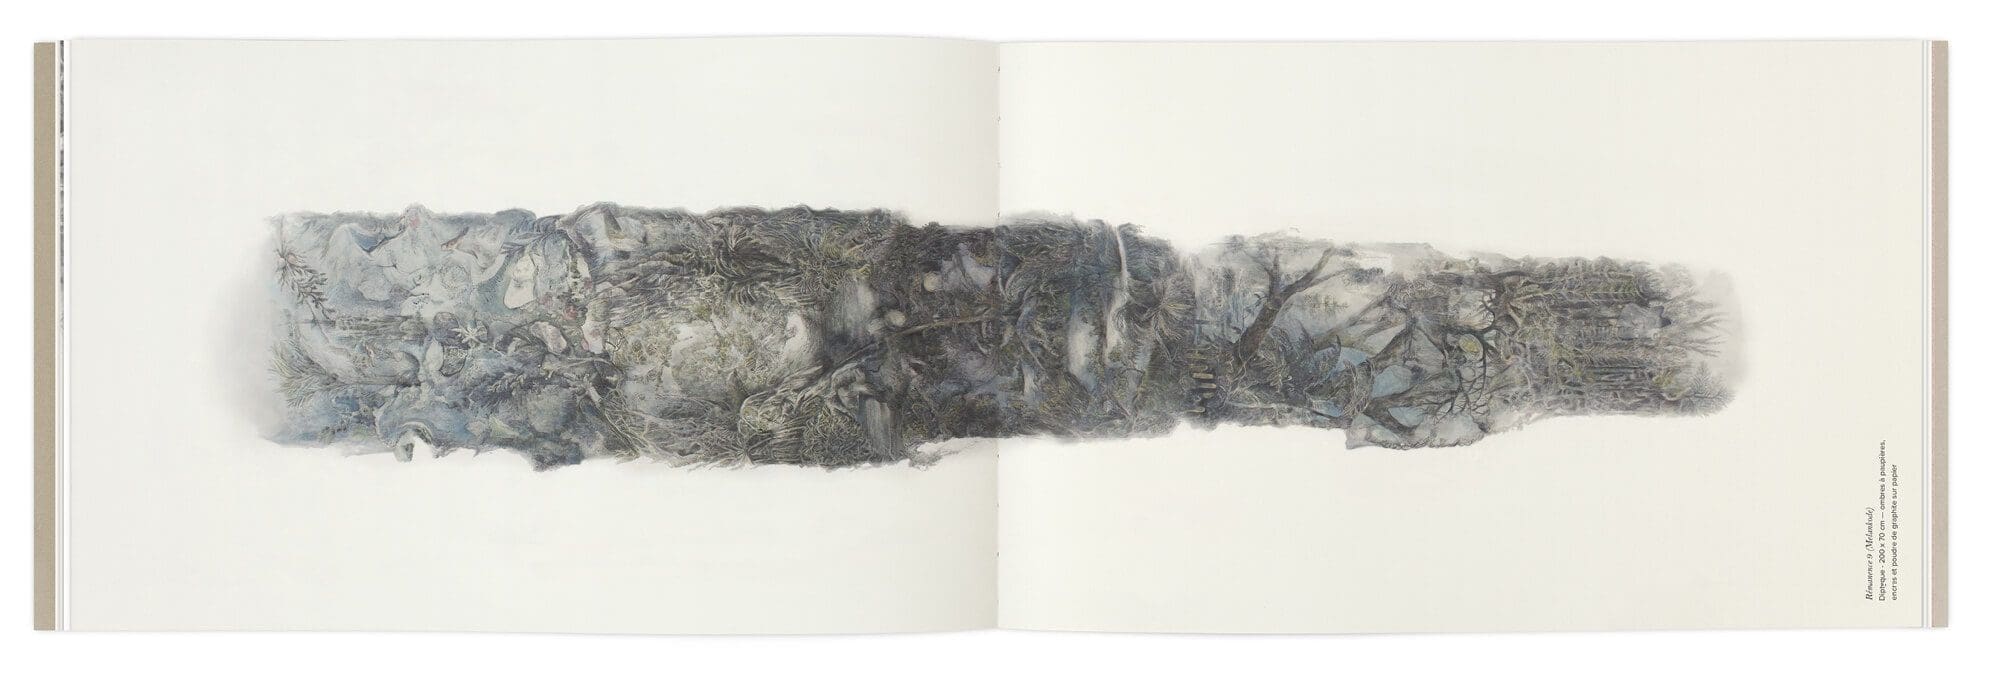 Hélène Muheim présente ses dessins grands formats dans son livre soutenu par le Cnap, graphisme IchetKar